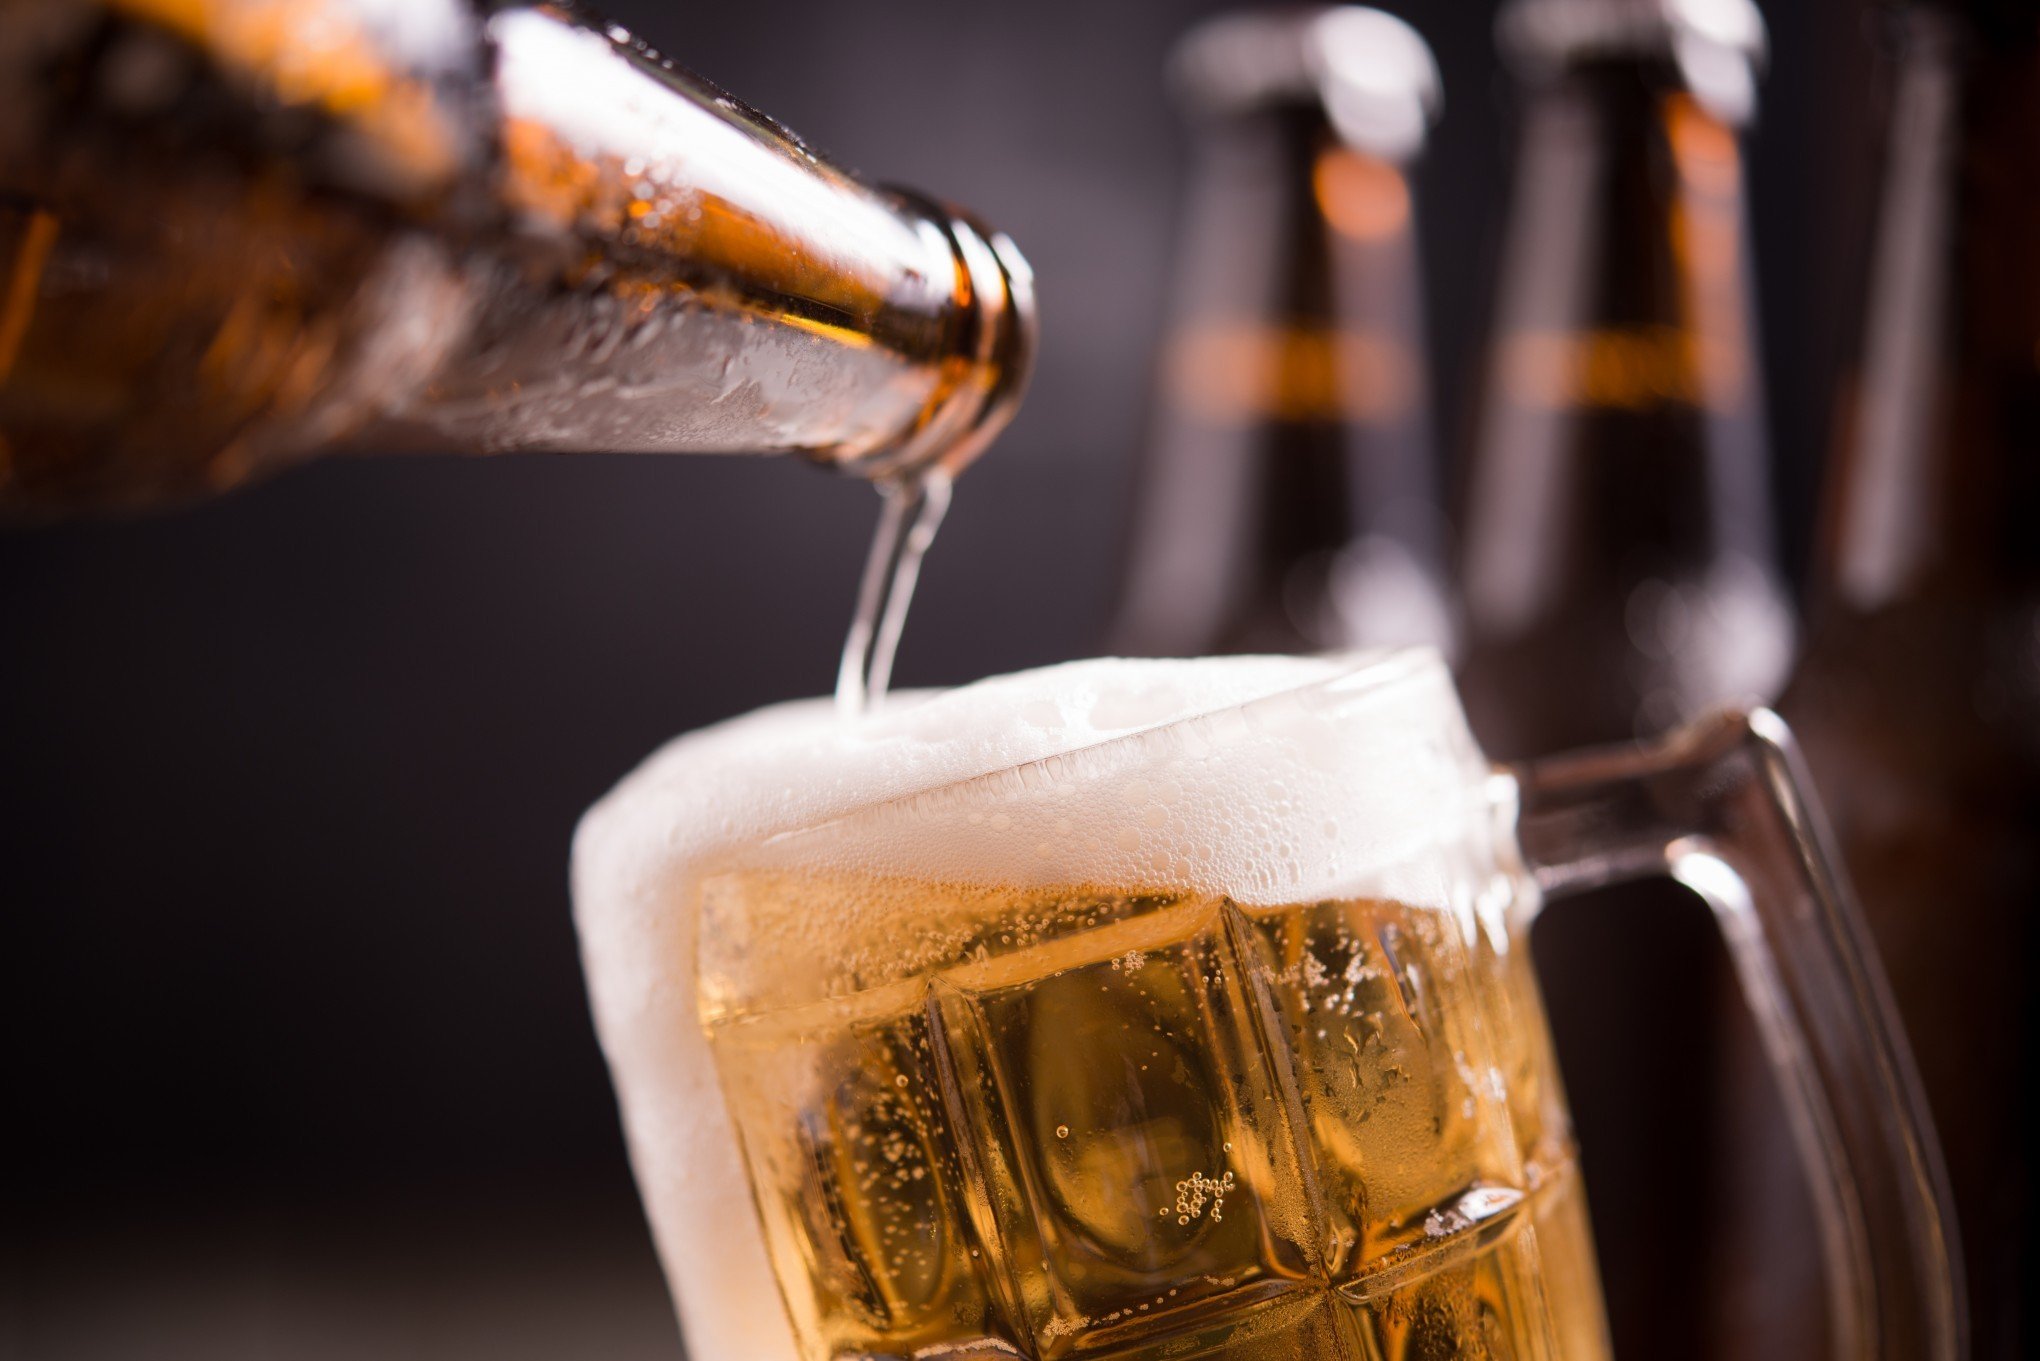 Consumo de álcool interfere no ganho de massa muscular?, saúde